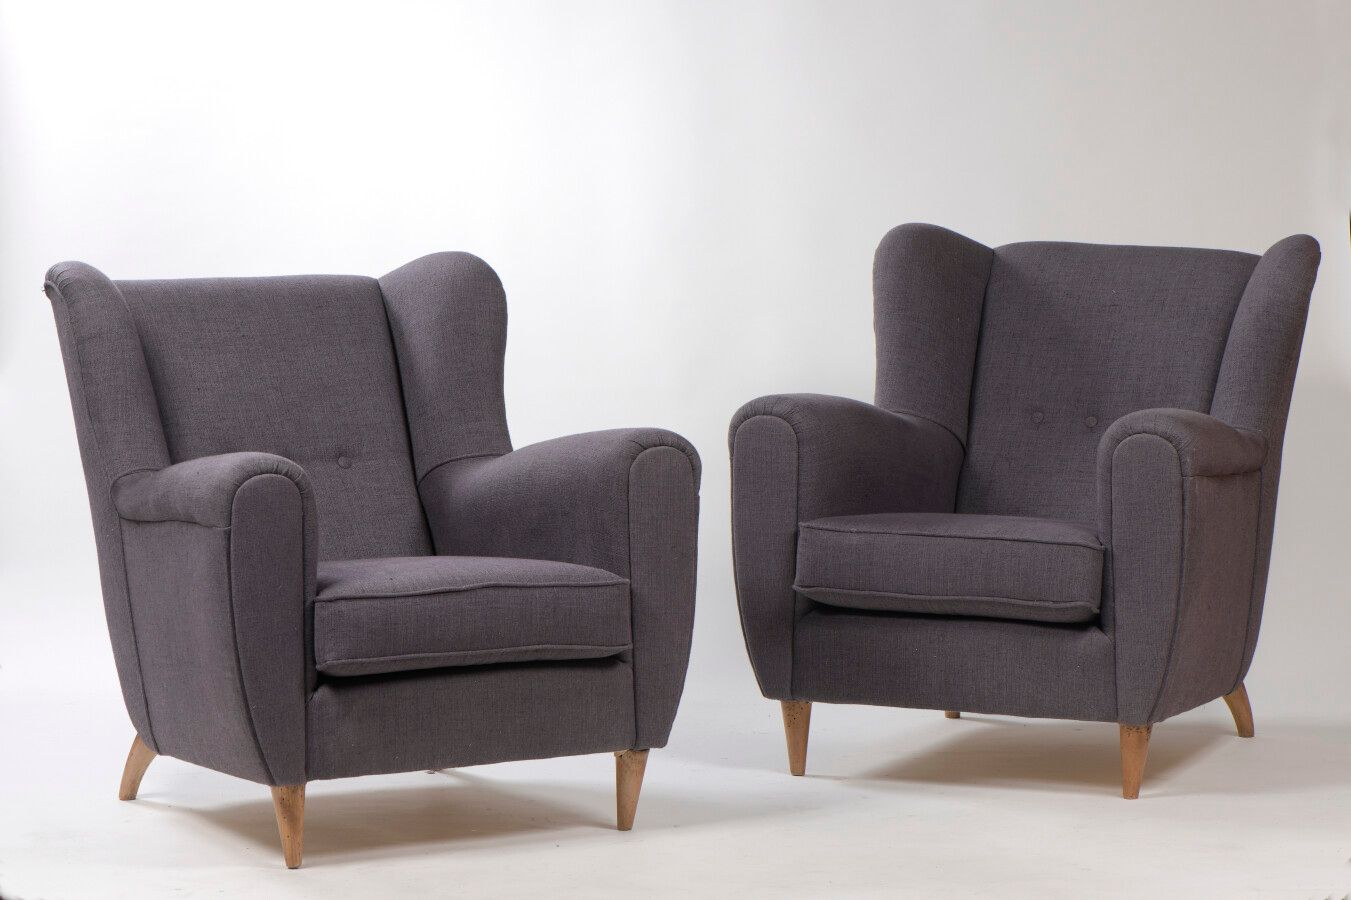 Null 1970年代的意大利作品

一对舒适的扶手椅

座椅上覆盖着烟灰色的织物

H.92 cm - D. 73 cm - W. 82 cm

状况良好